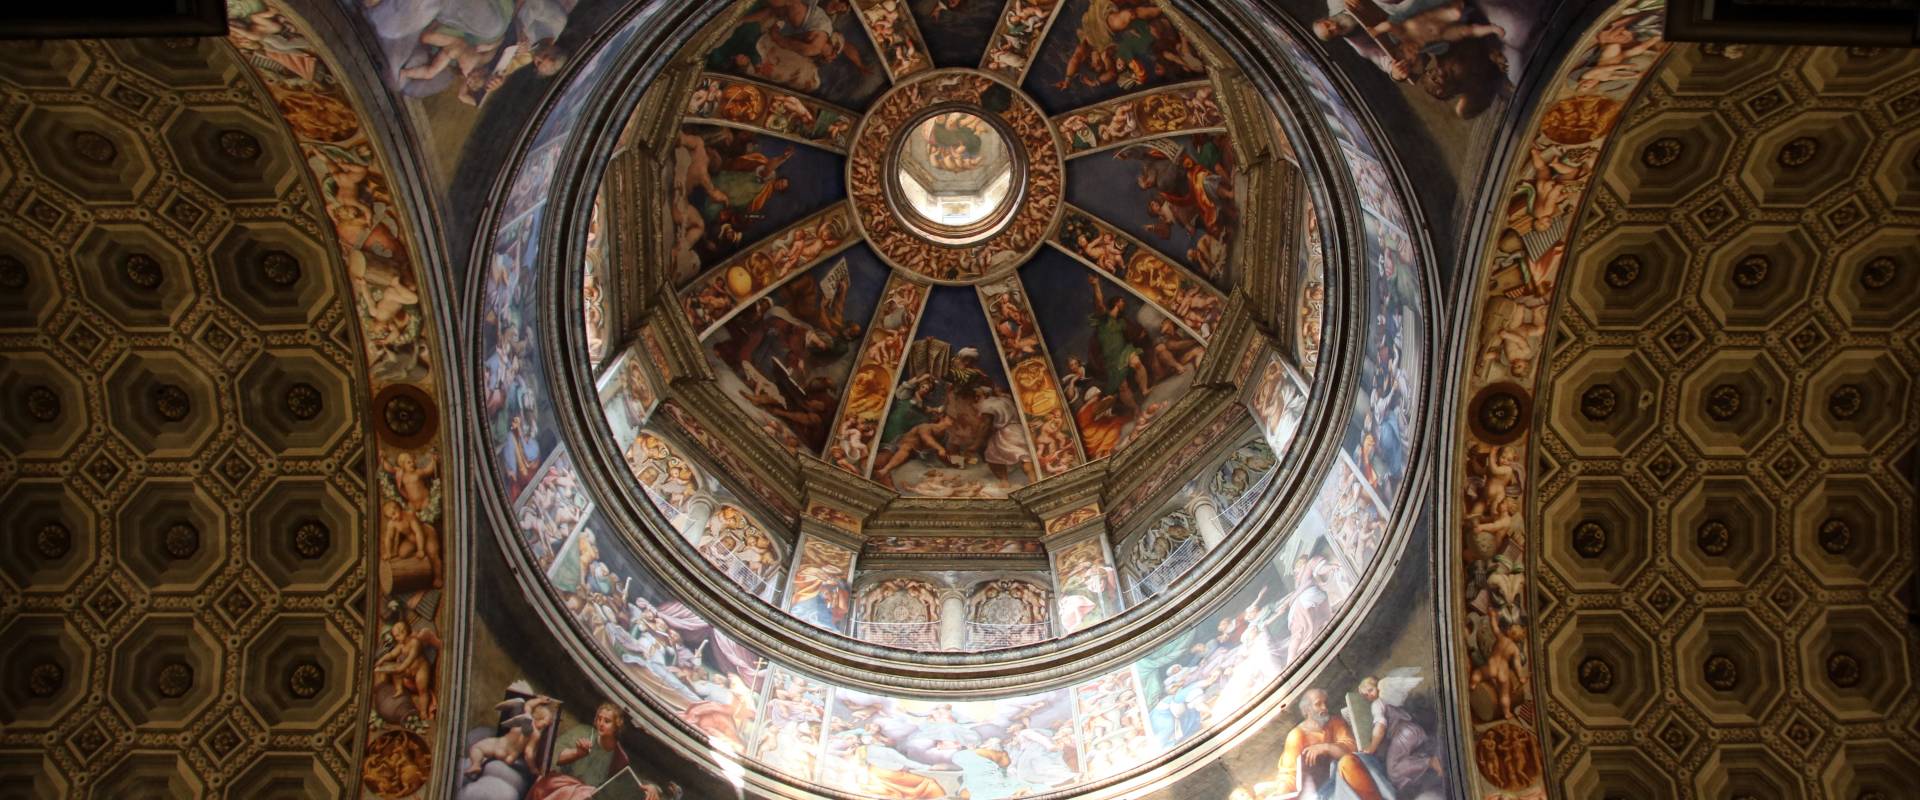 Cupola, affrescato dal Pordenone (1530) 08 foto di Mongolo1984